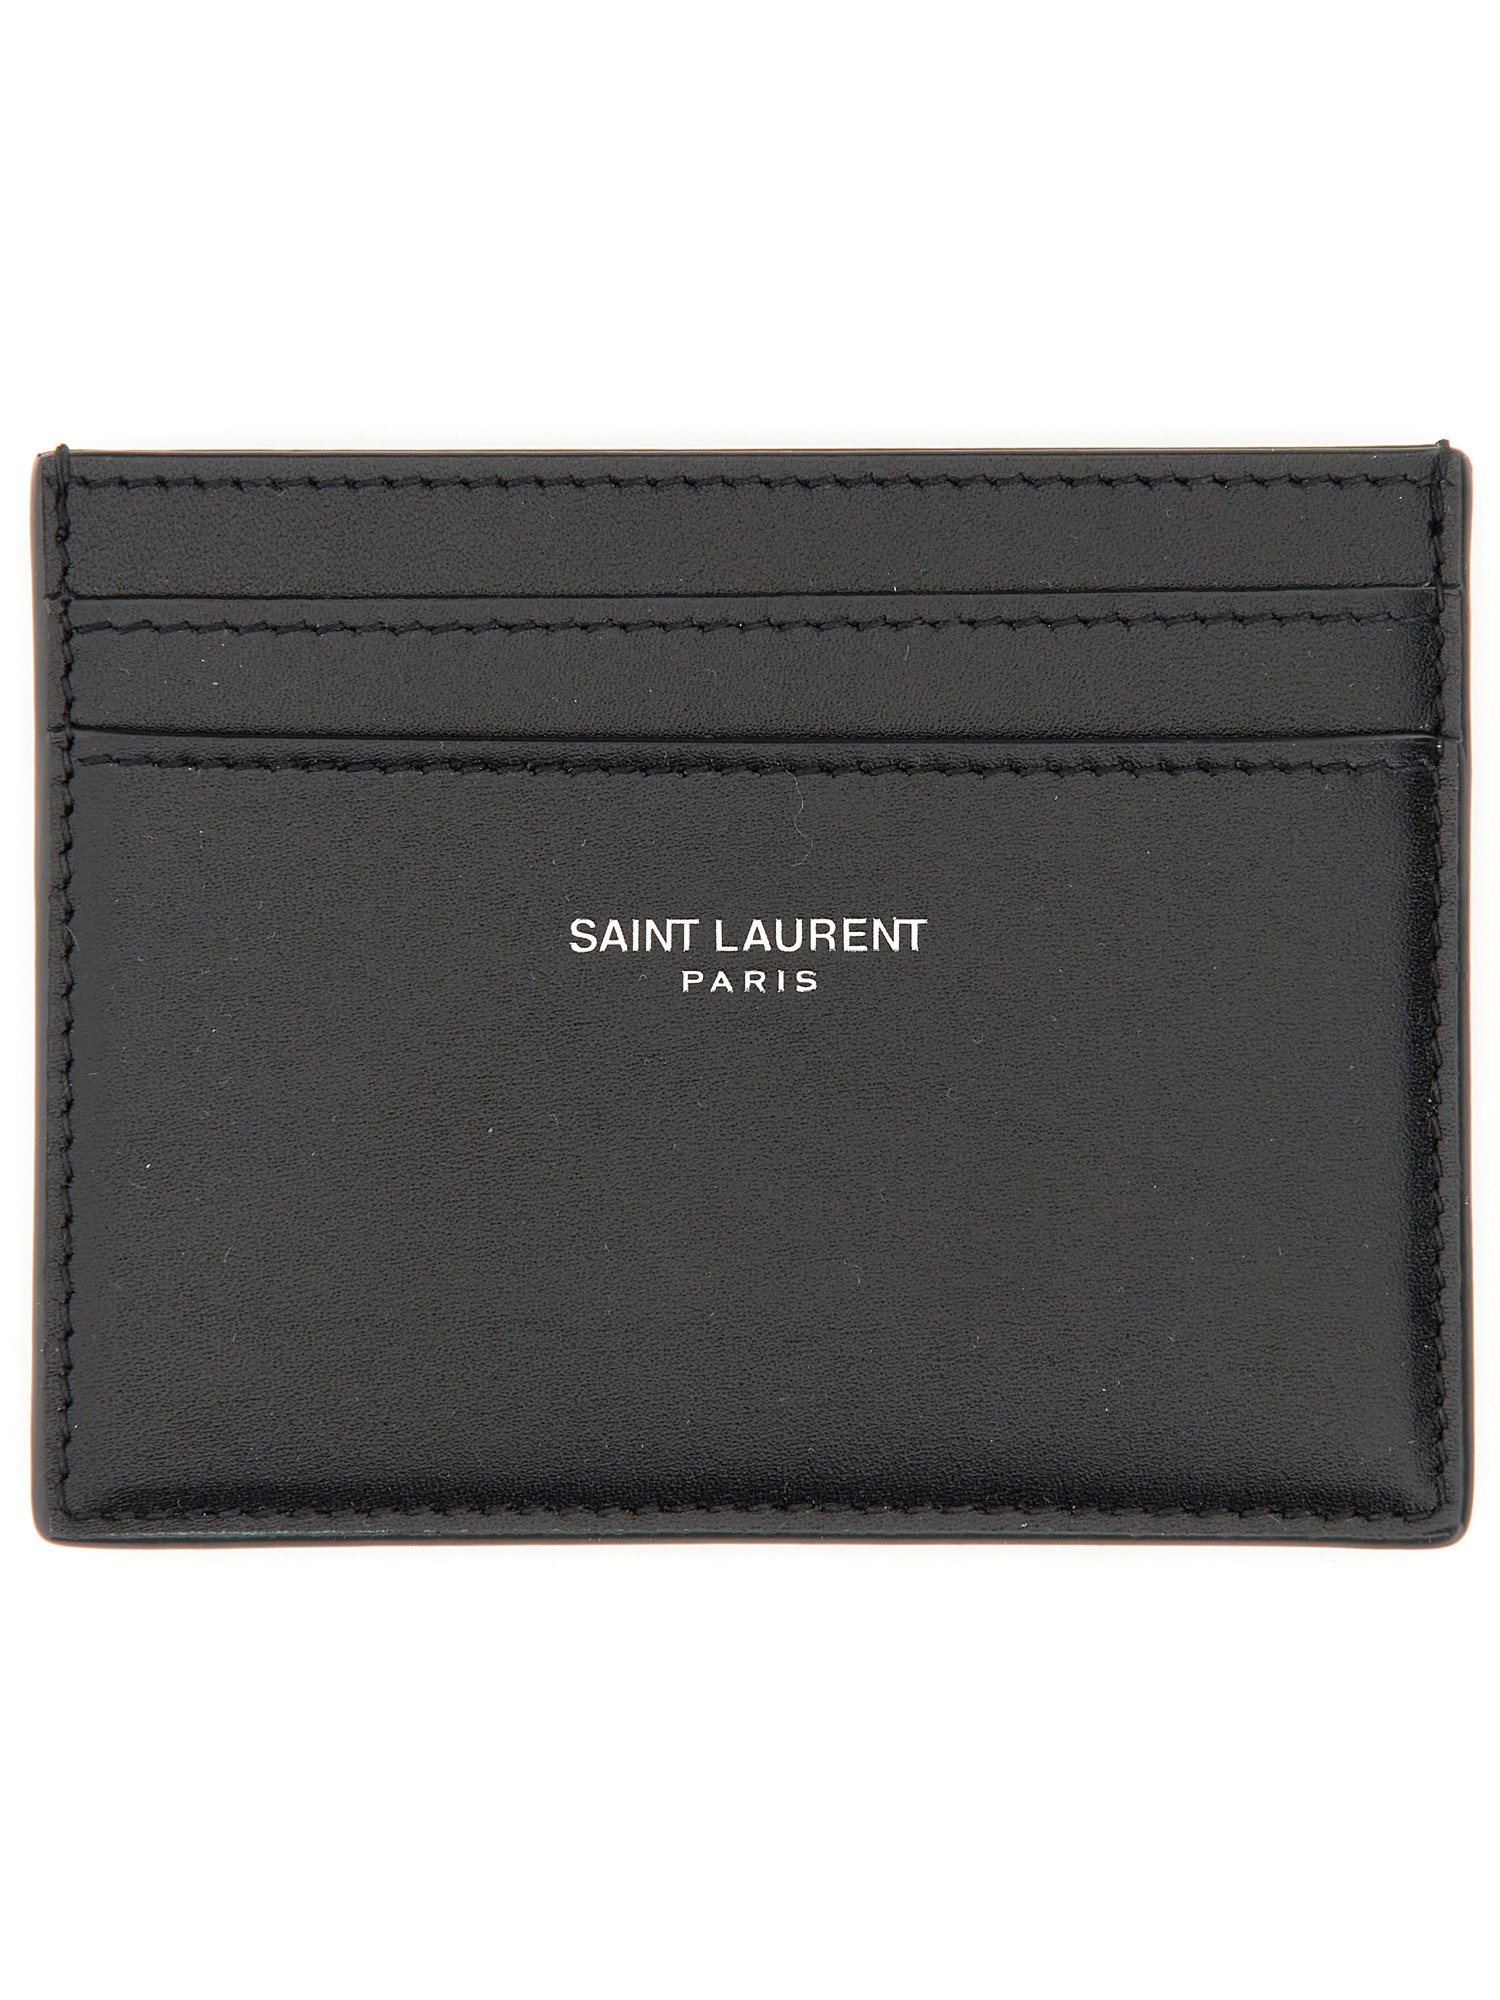 Saint Laurent saint laurent card holder with logo